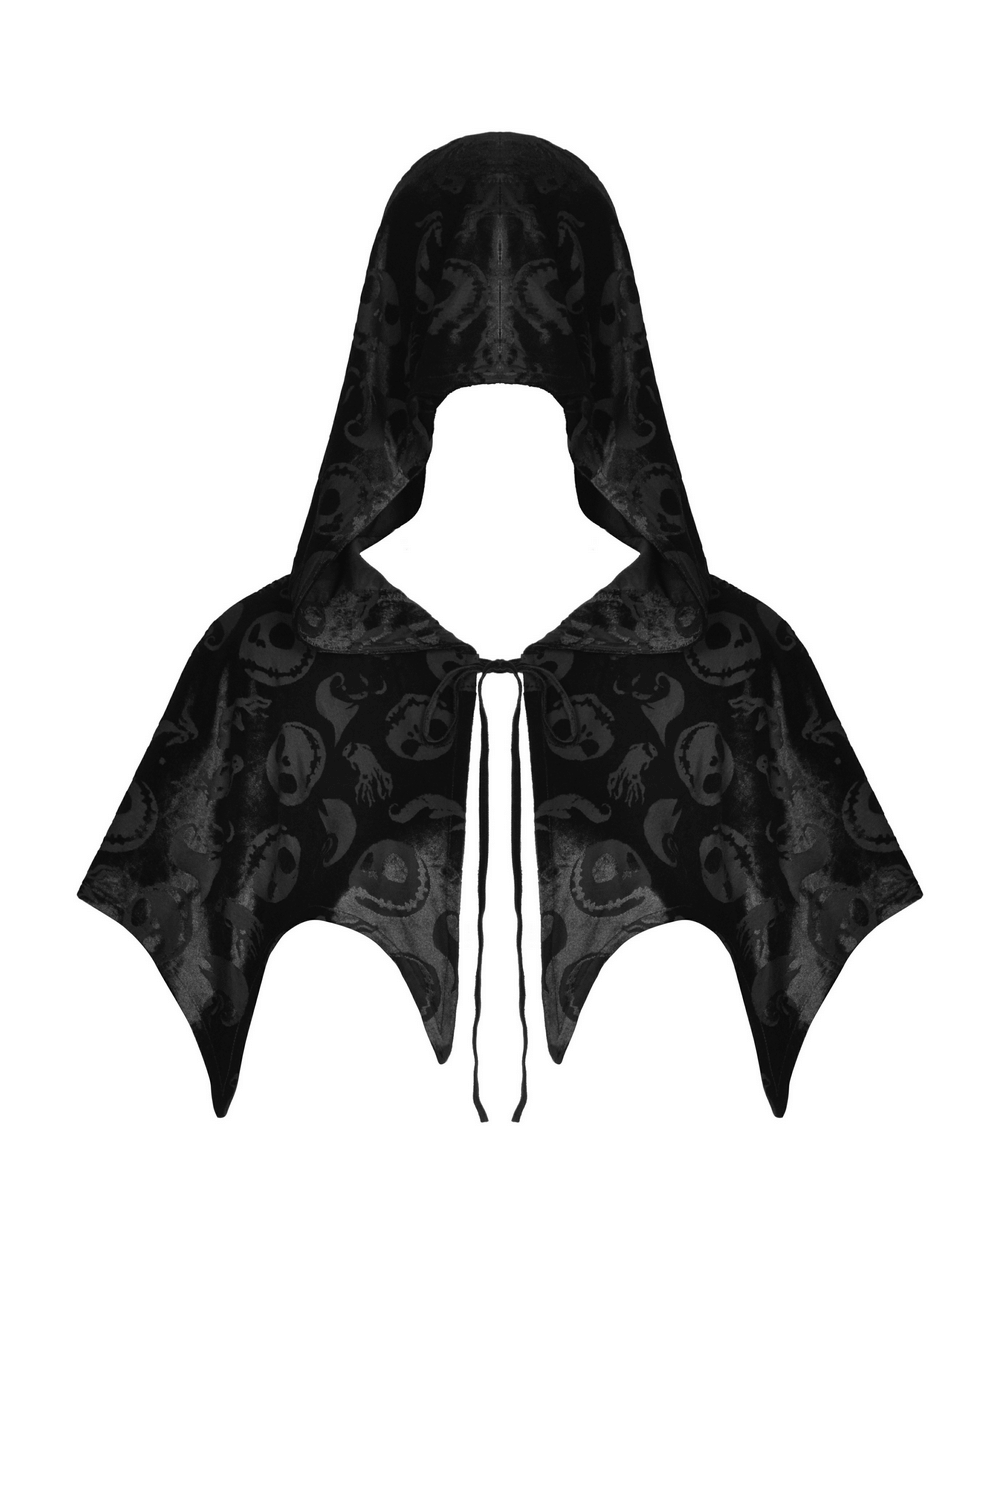 Black Velvet Hooded Cape With Skull Print Design